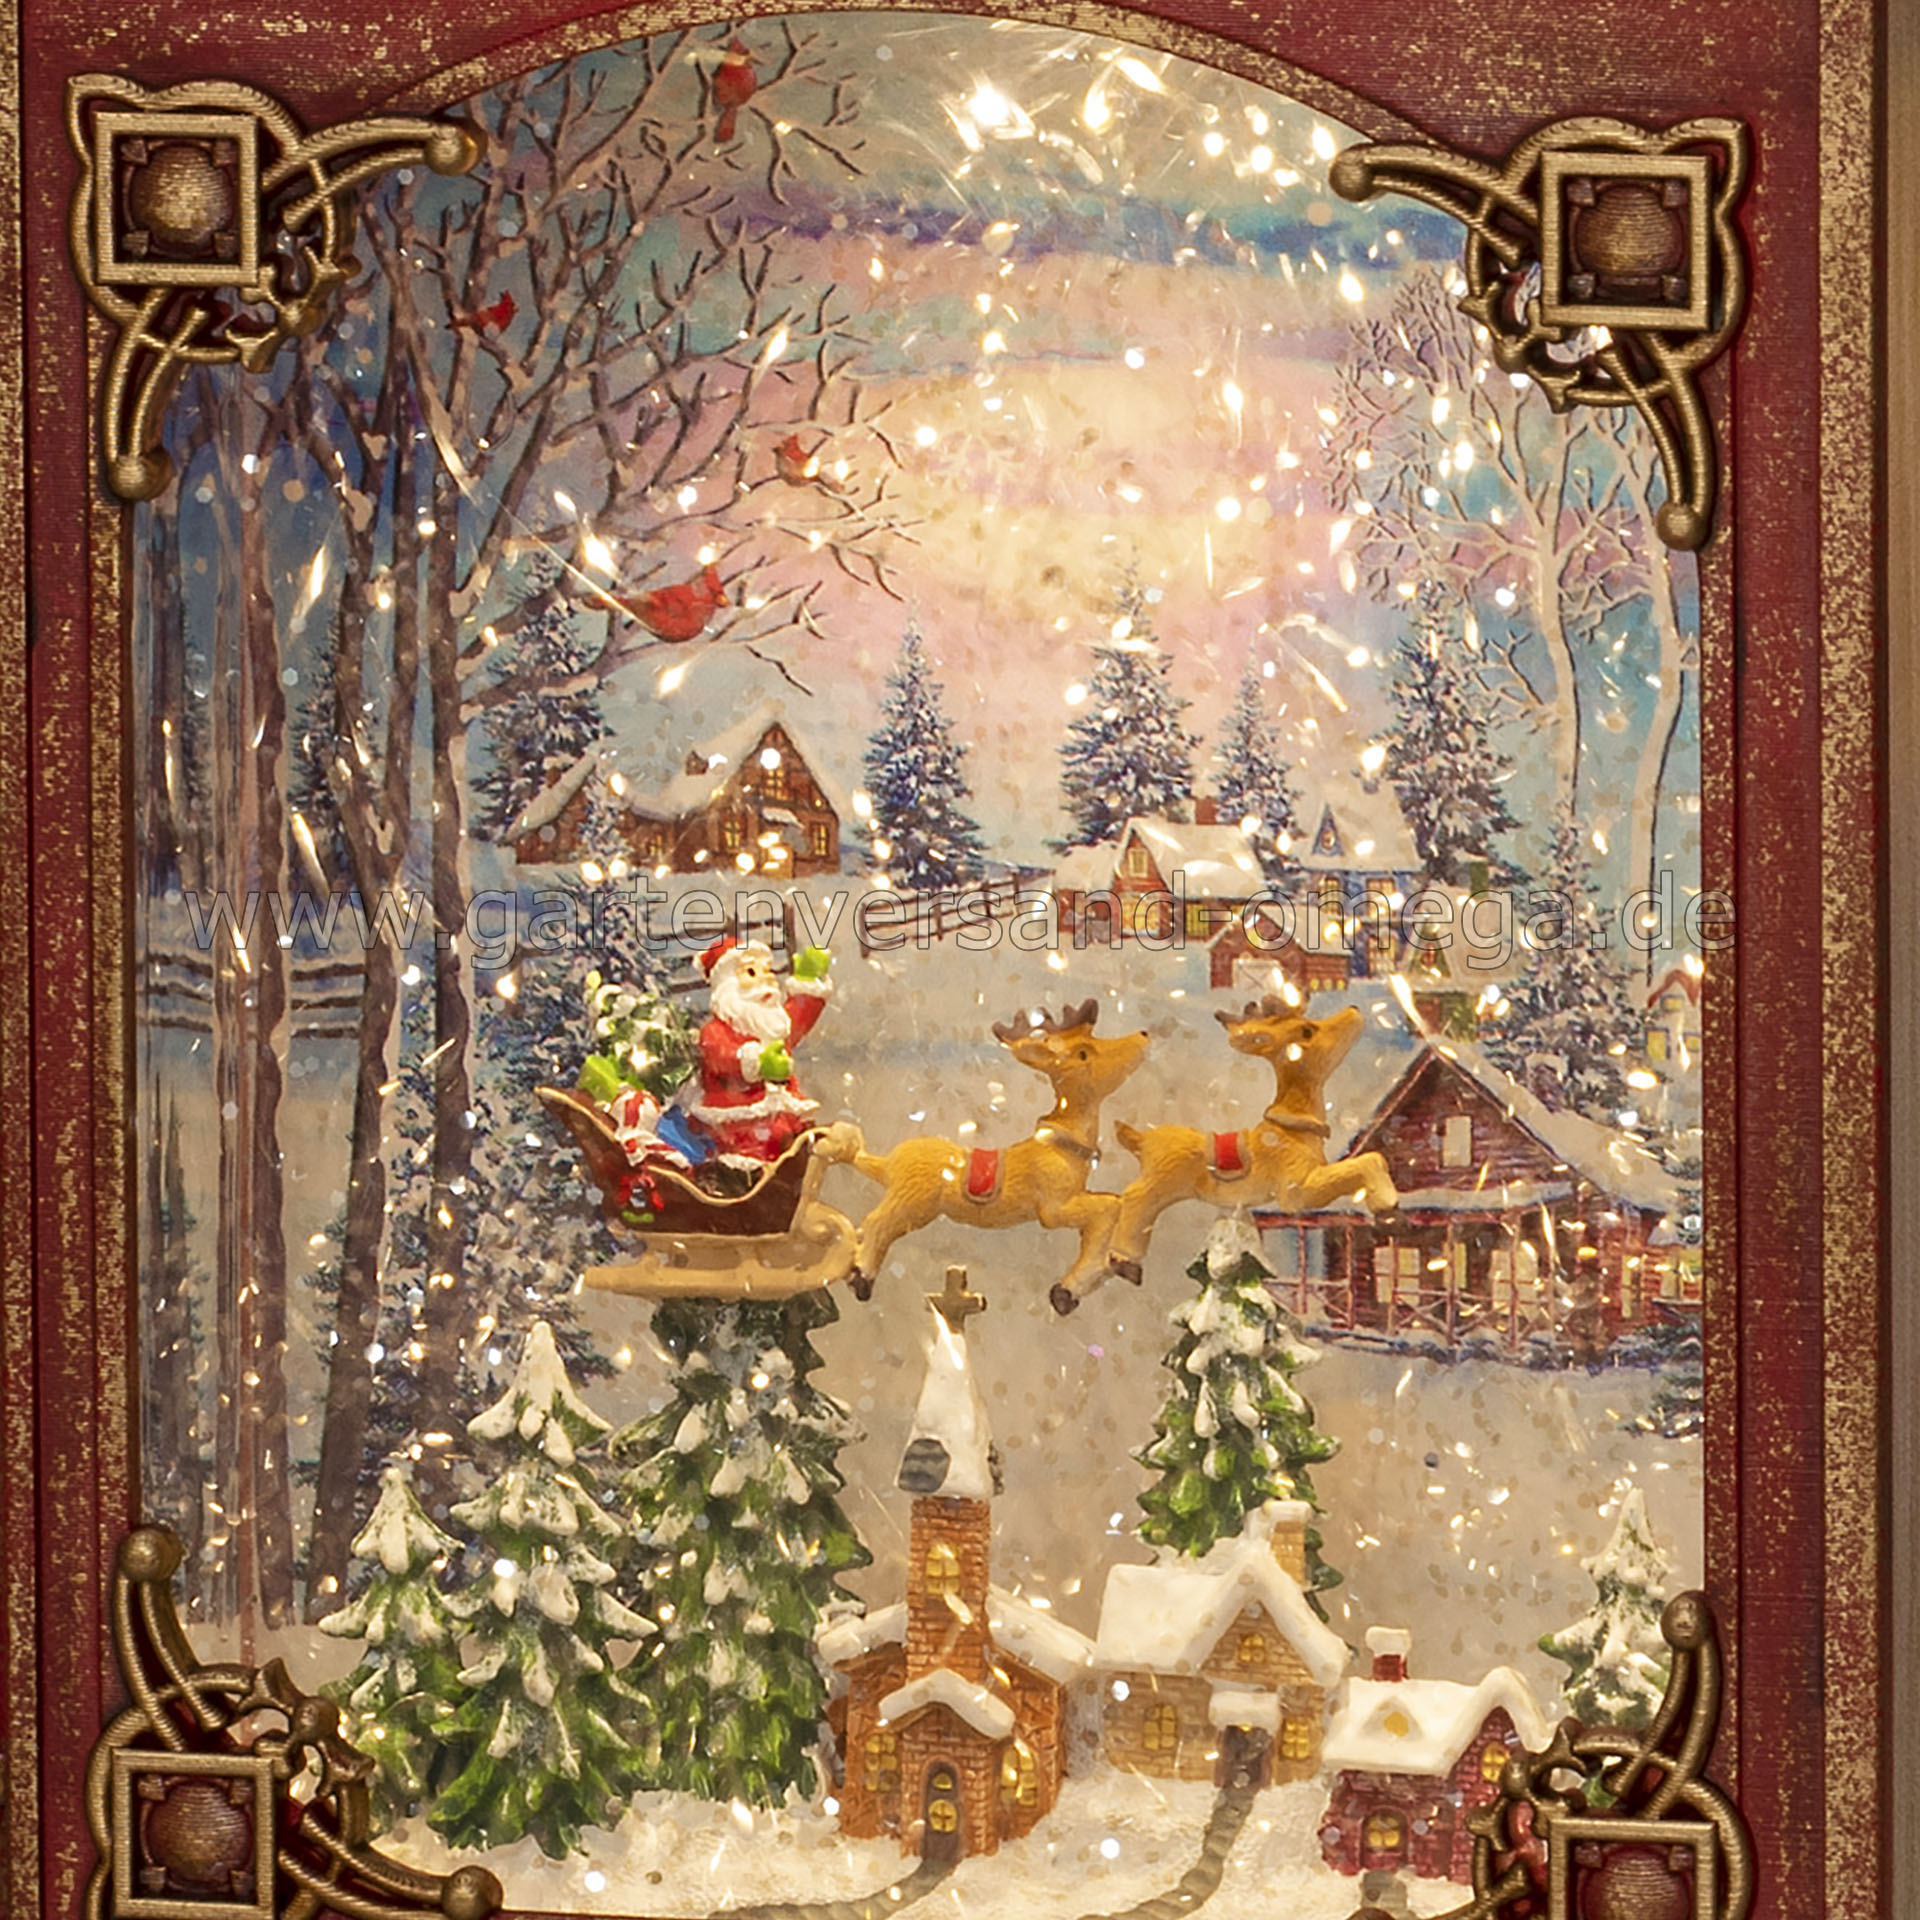 Wassergefüllte LED-Dekoration Buch Weihnachtsmann im Schlitten mit  Rentieren - Dekoration mit Glitzerwirbel, Schneekugel mit automatischem  Schneefall, Schneelaterne, Weihnachtsdekoration mit Schneekugel-Funktion,  Weihnachtsbeleuchtung | Gartenversand Omega